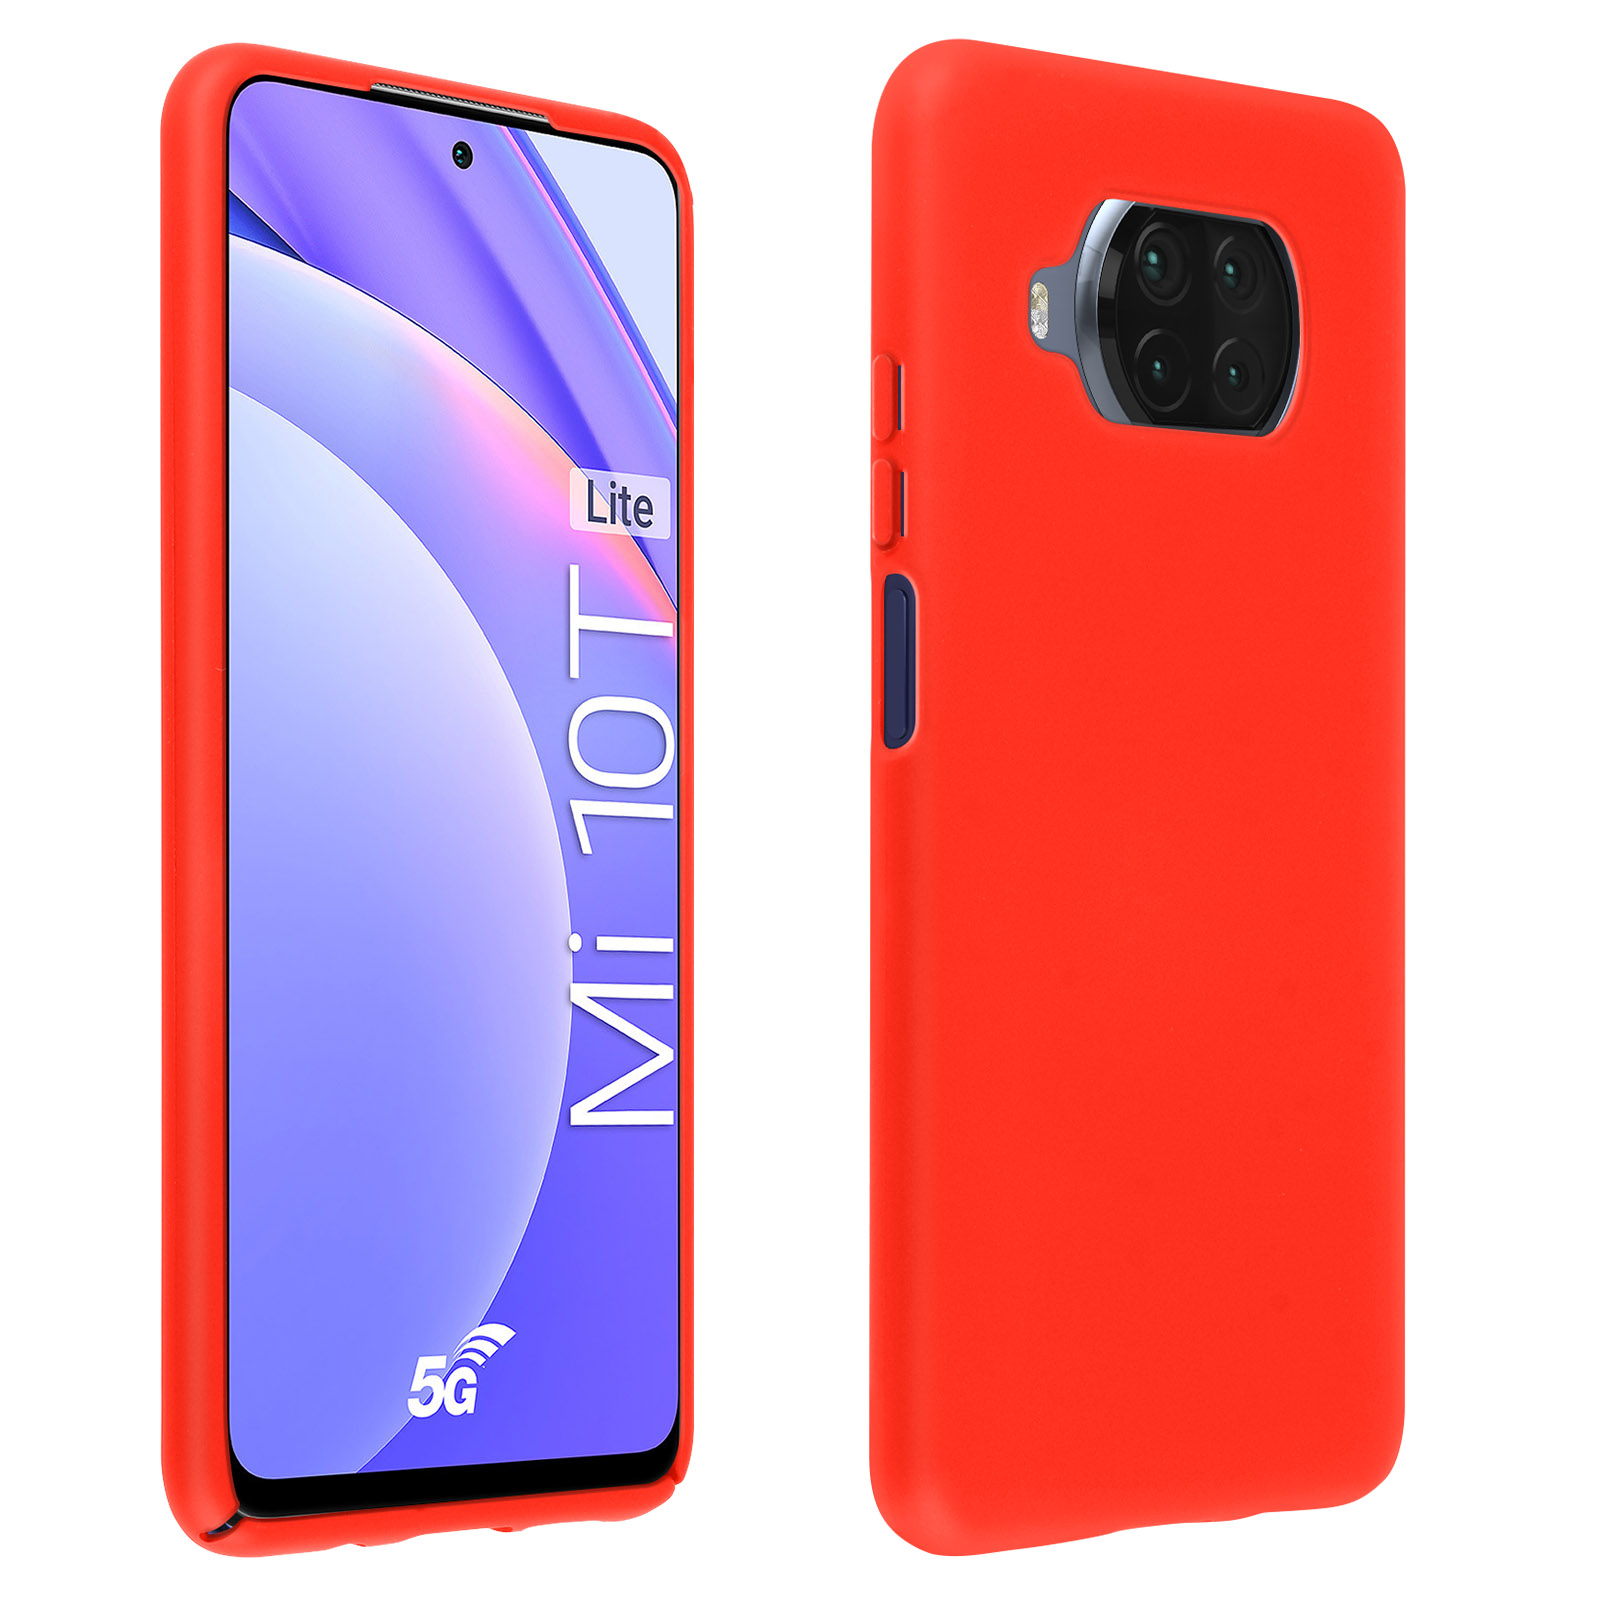 Funda Carcasa protectora de silicona semirrígida suave al tacto - Rojo para Xiaomi  Mi 10T Lite - Spain